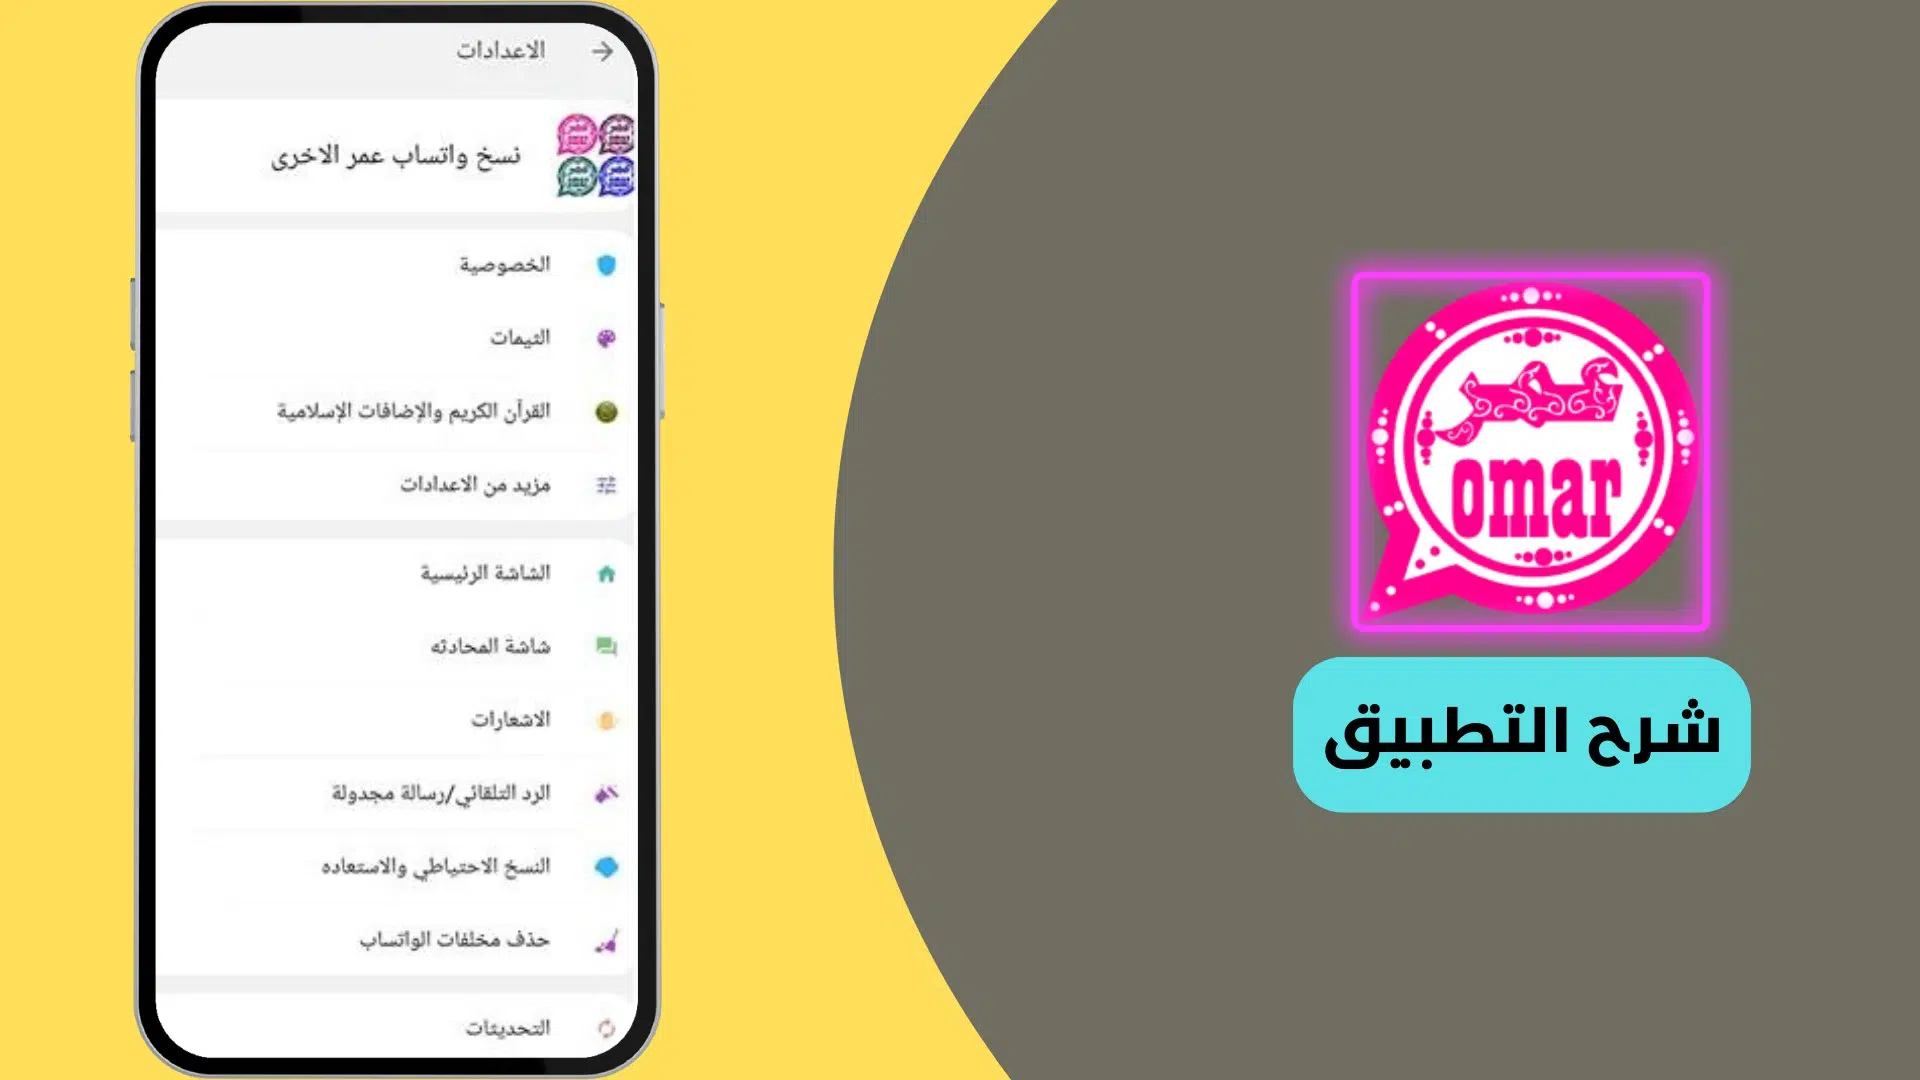 تحميل تطبيق واتساب عمر الوردي اخر اصدار من ميديا فاير